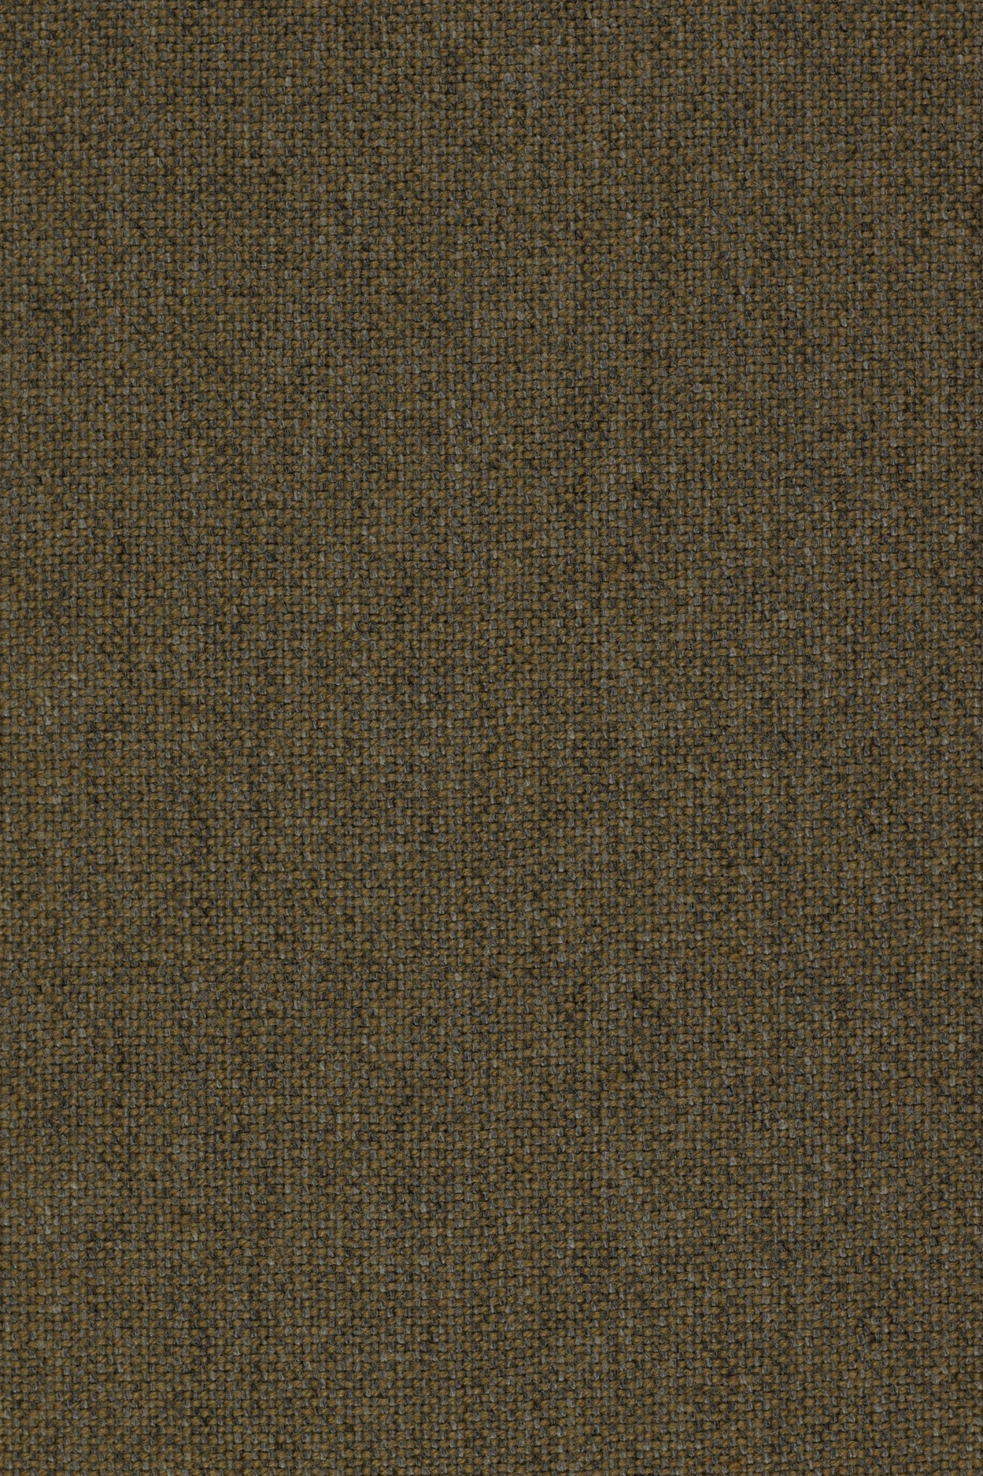 Fabric sample Hallingdal 65 227 brown